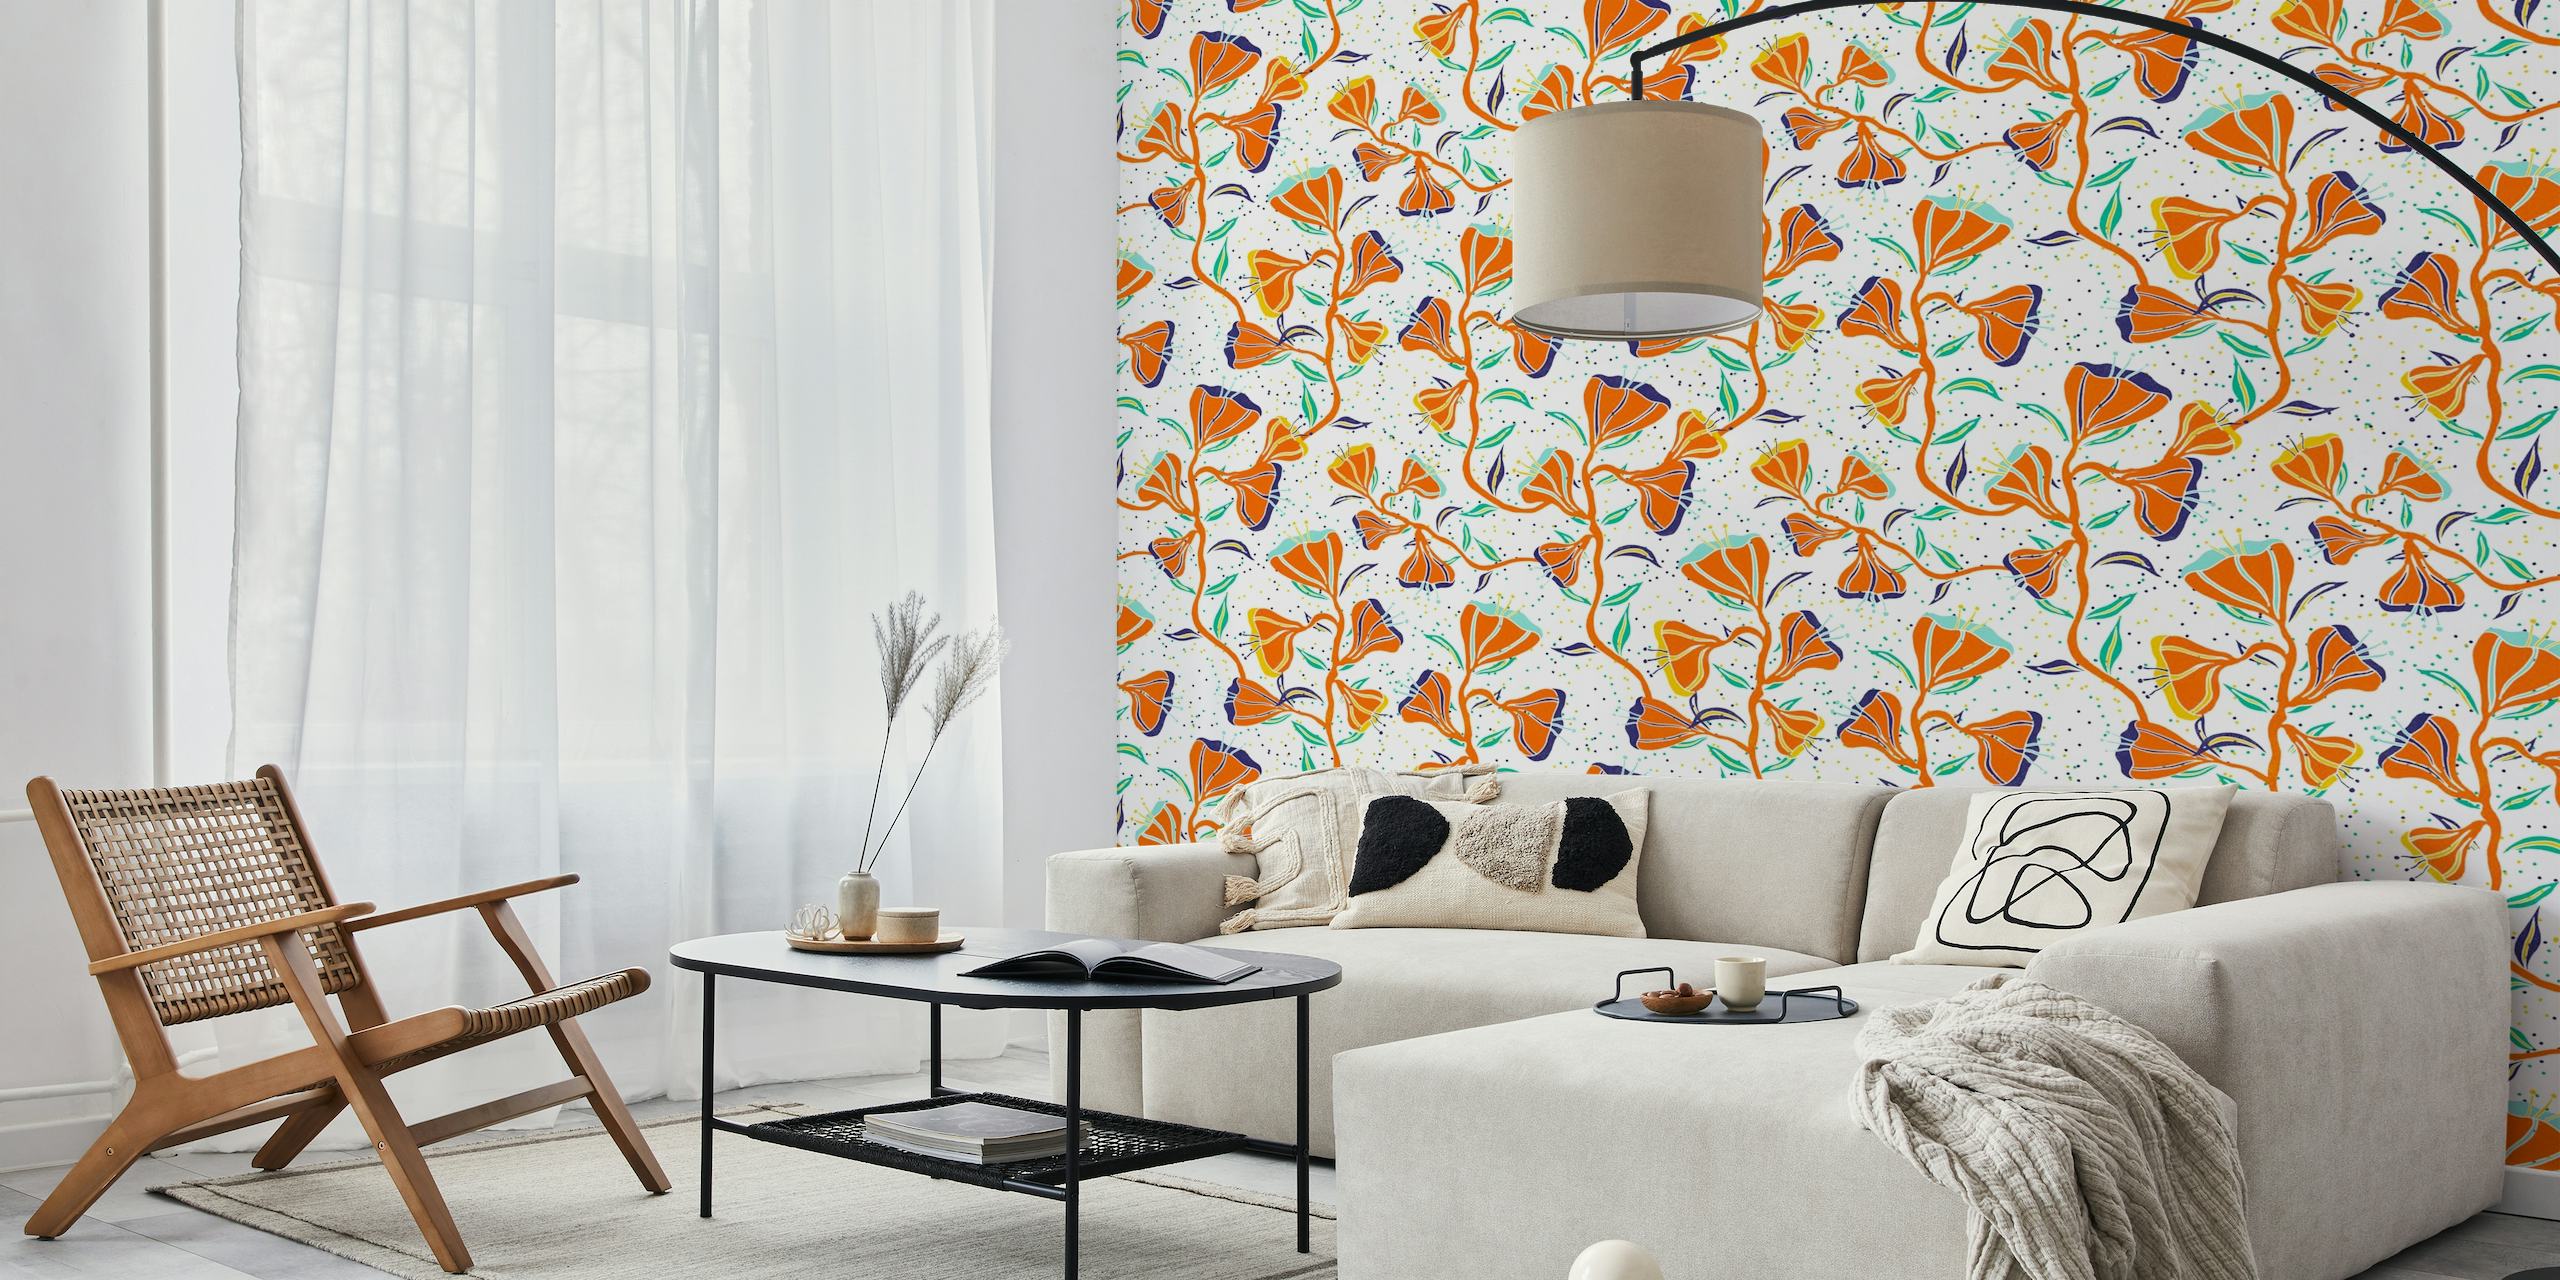 Oranje zomerbloemen muurschildering met handgetekende esthetiek op witte achtergrond